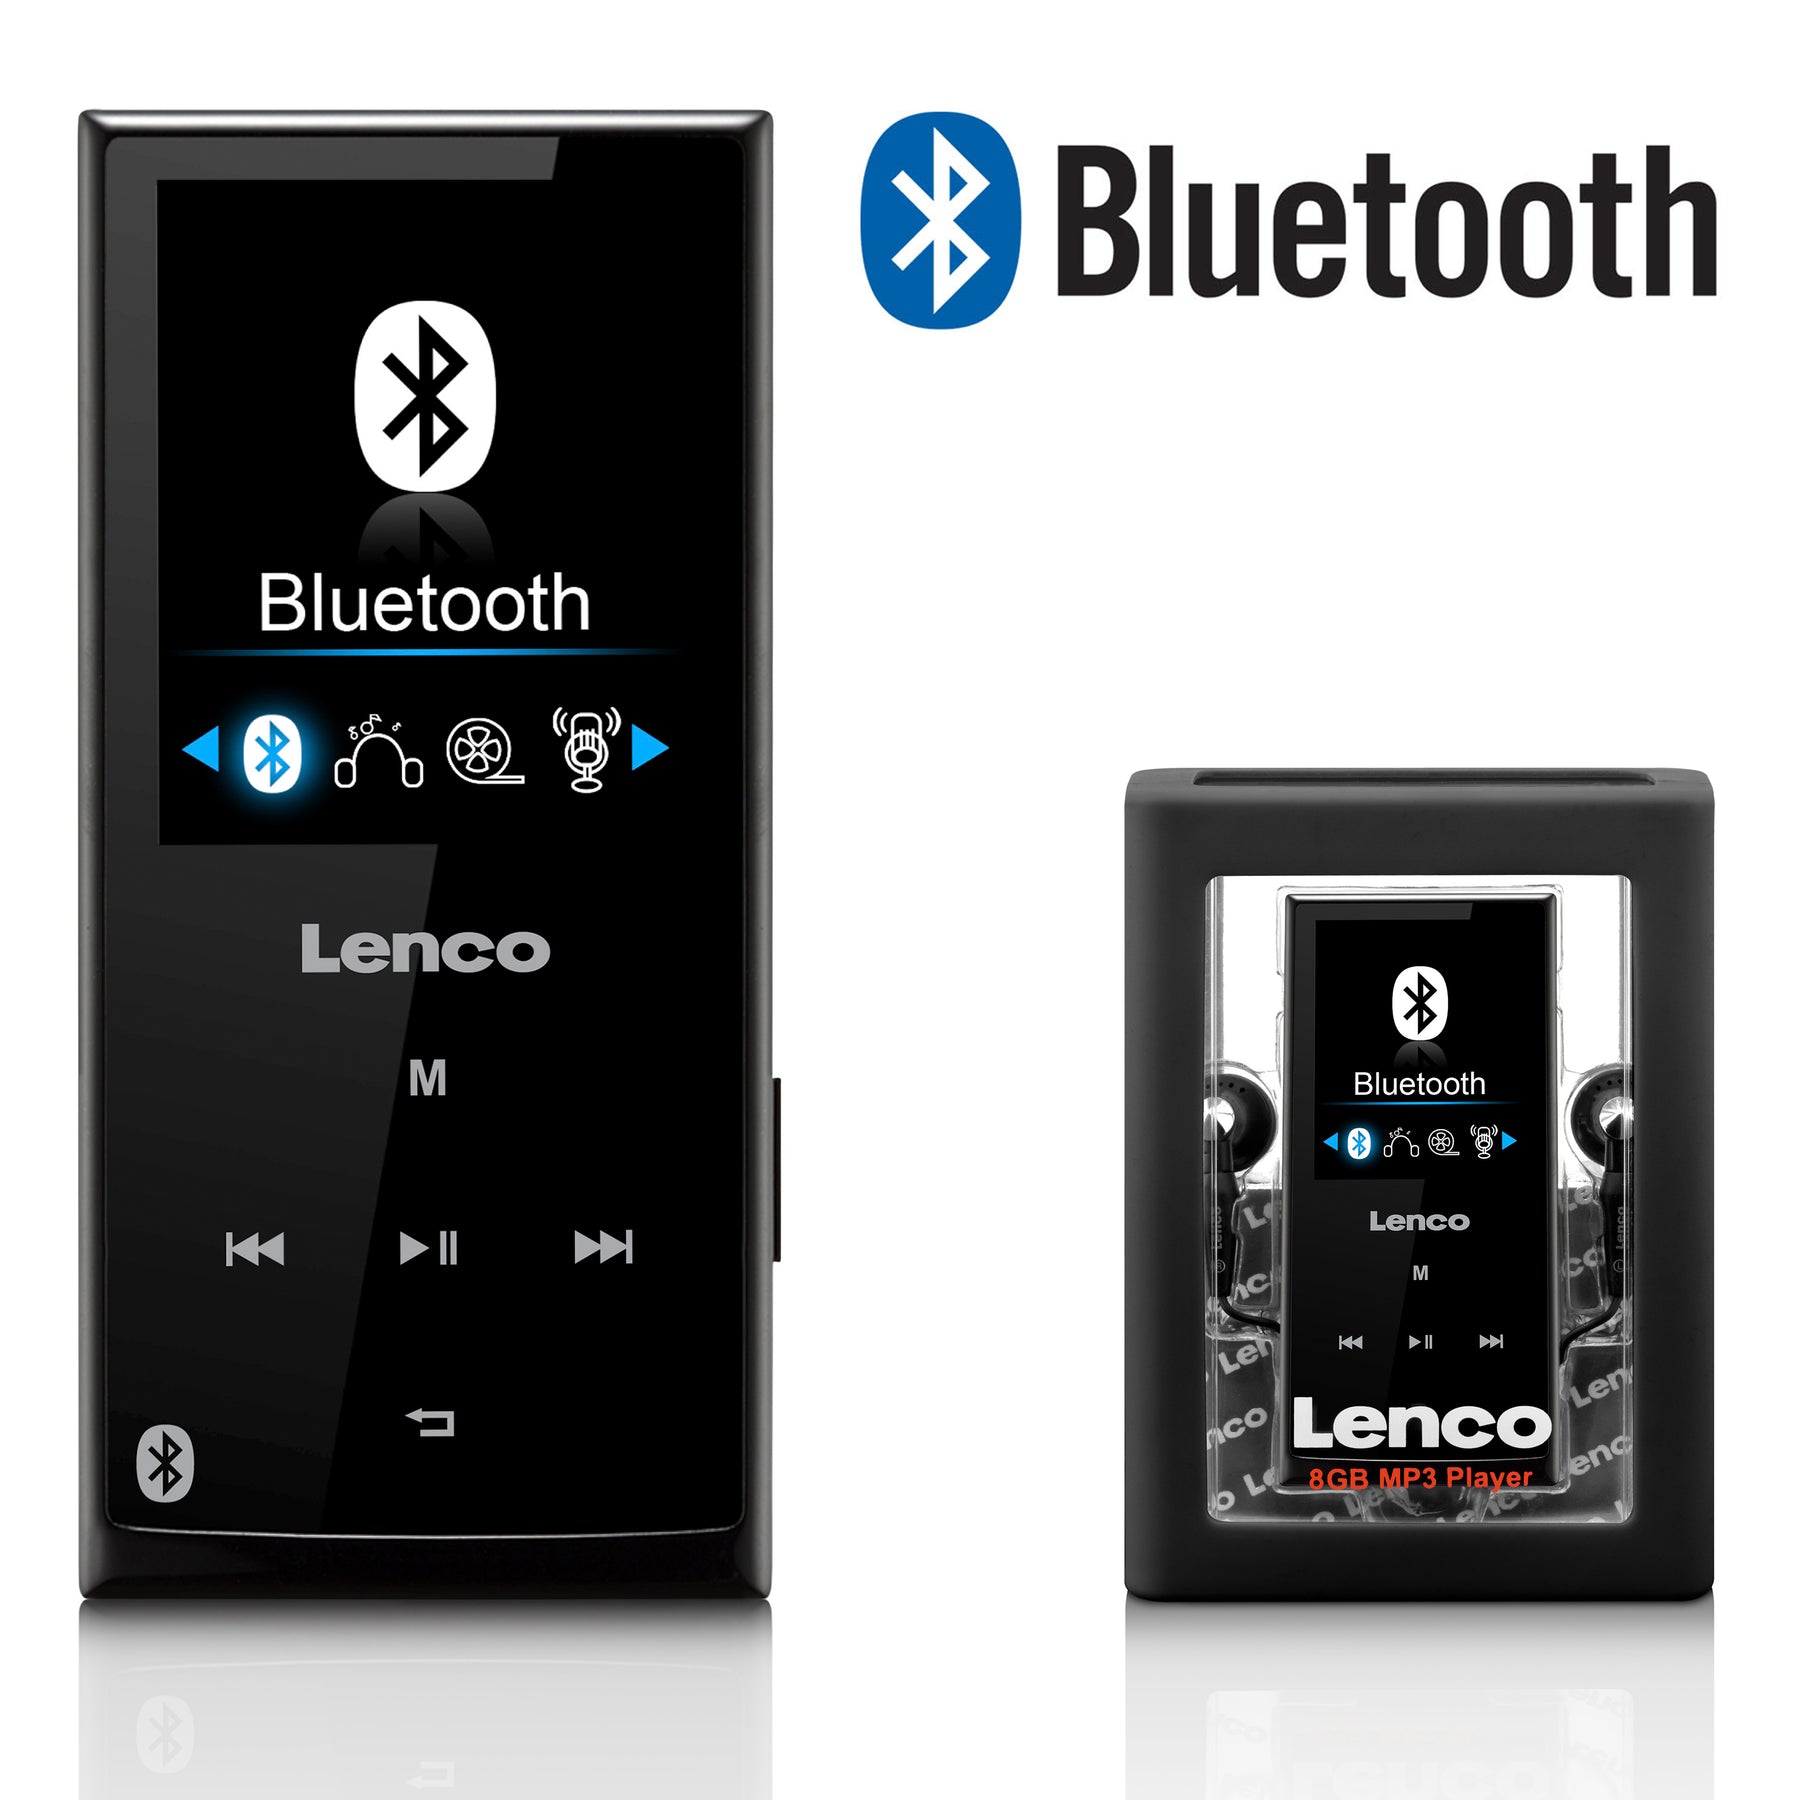 Lenco Xemio-768 Lime - Lecteur MP3 Bluetooth avec batterie rechargeable et  carte MicroSD 8 Go